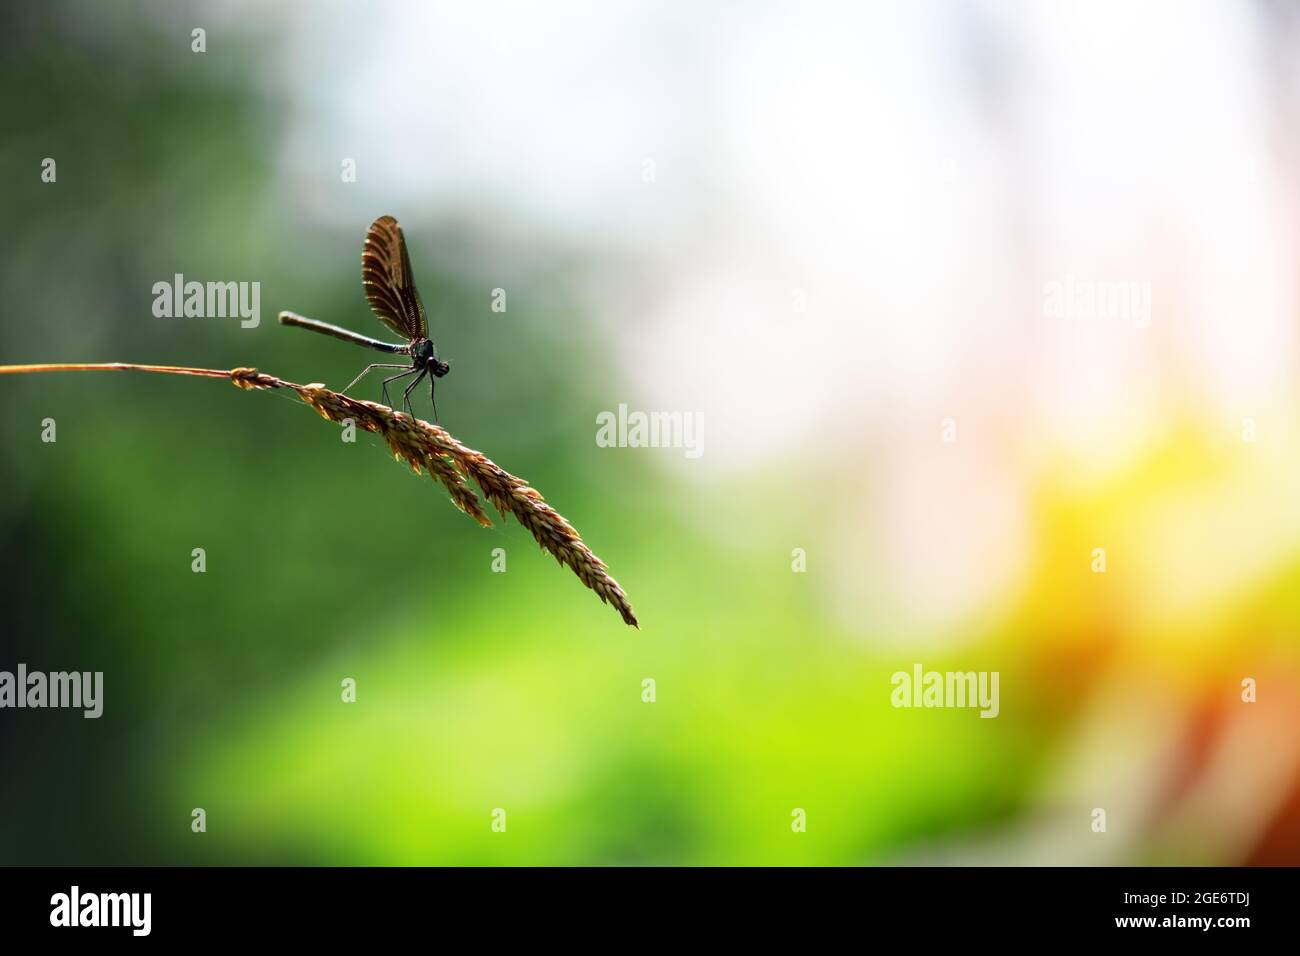 Wunderschöne Naturszene mit Libelle auf grünem Zweig. Makrofotografie Stockfoto